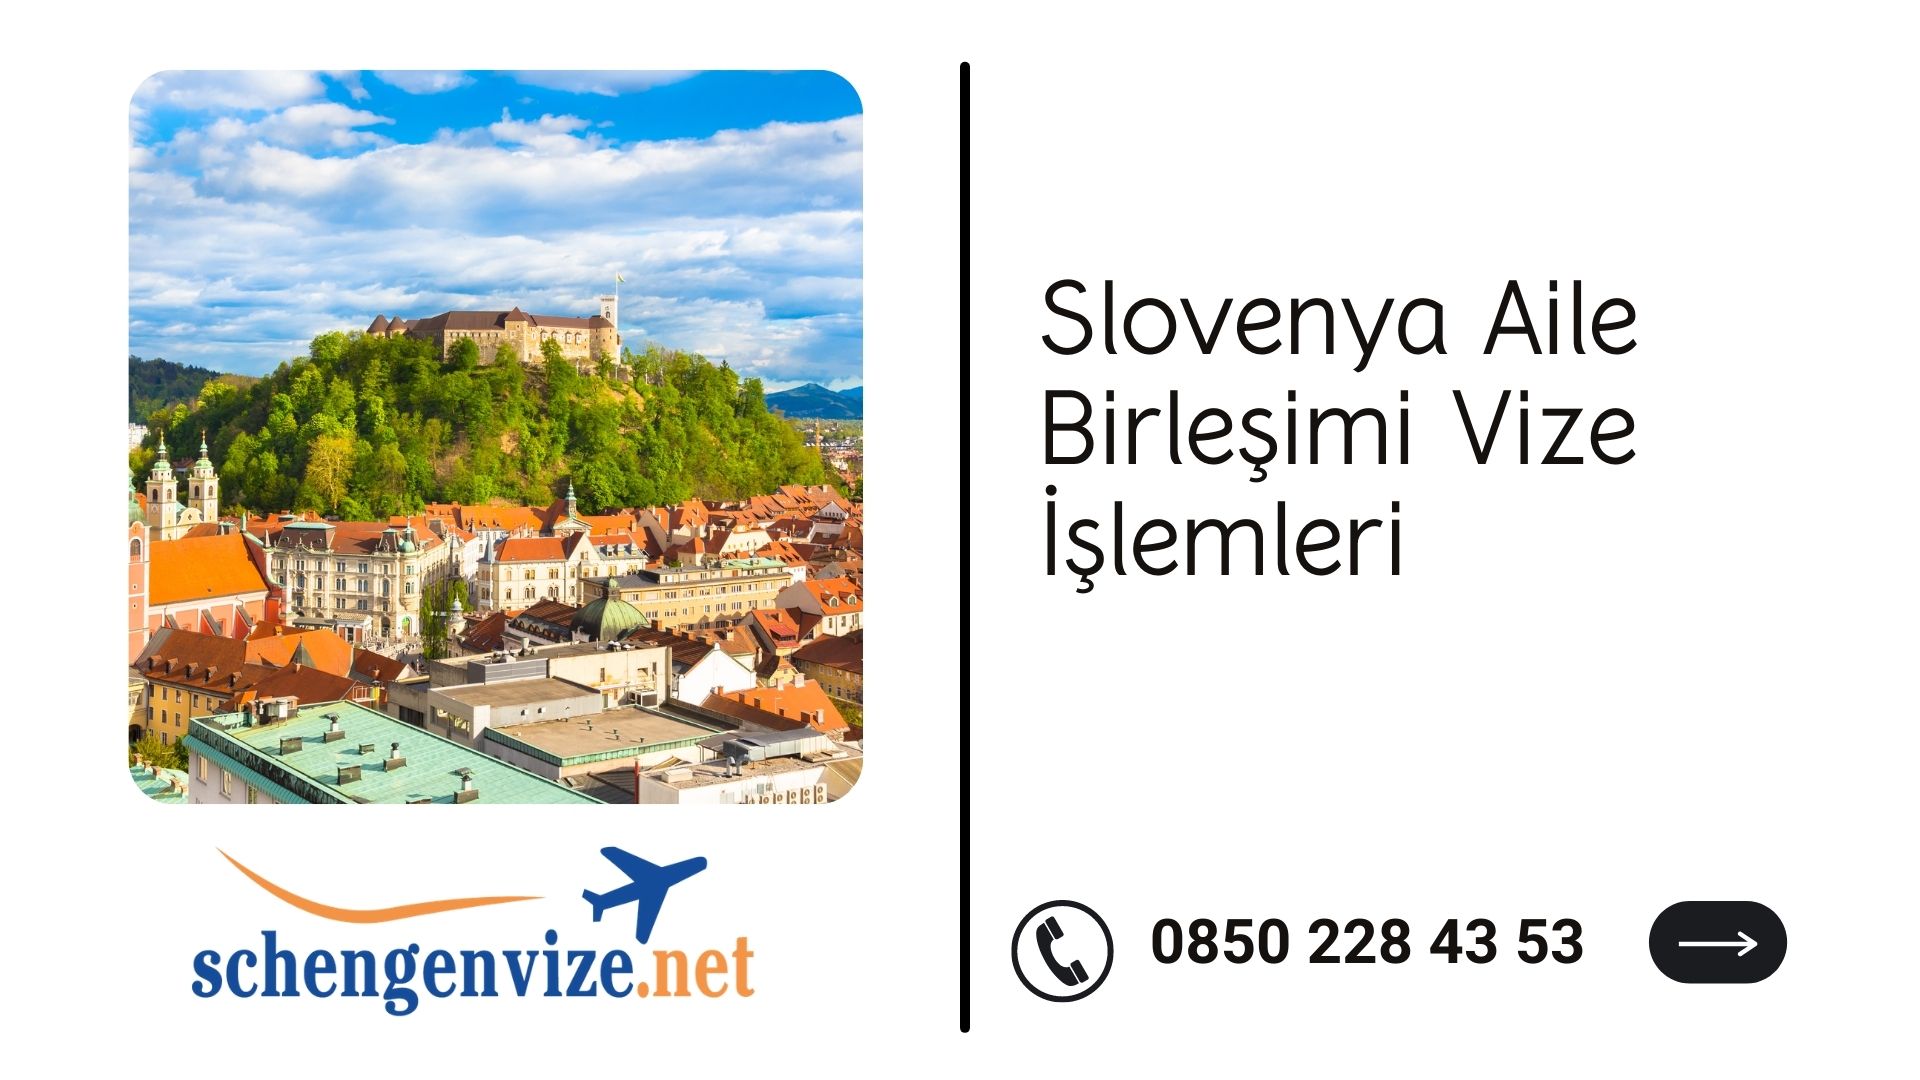 Slovenya Aile Birleşimi Vize İşlemleri